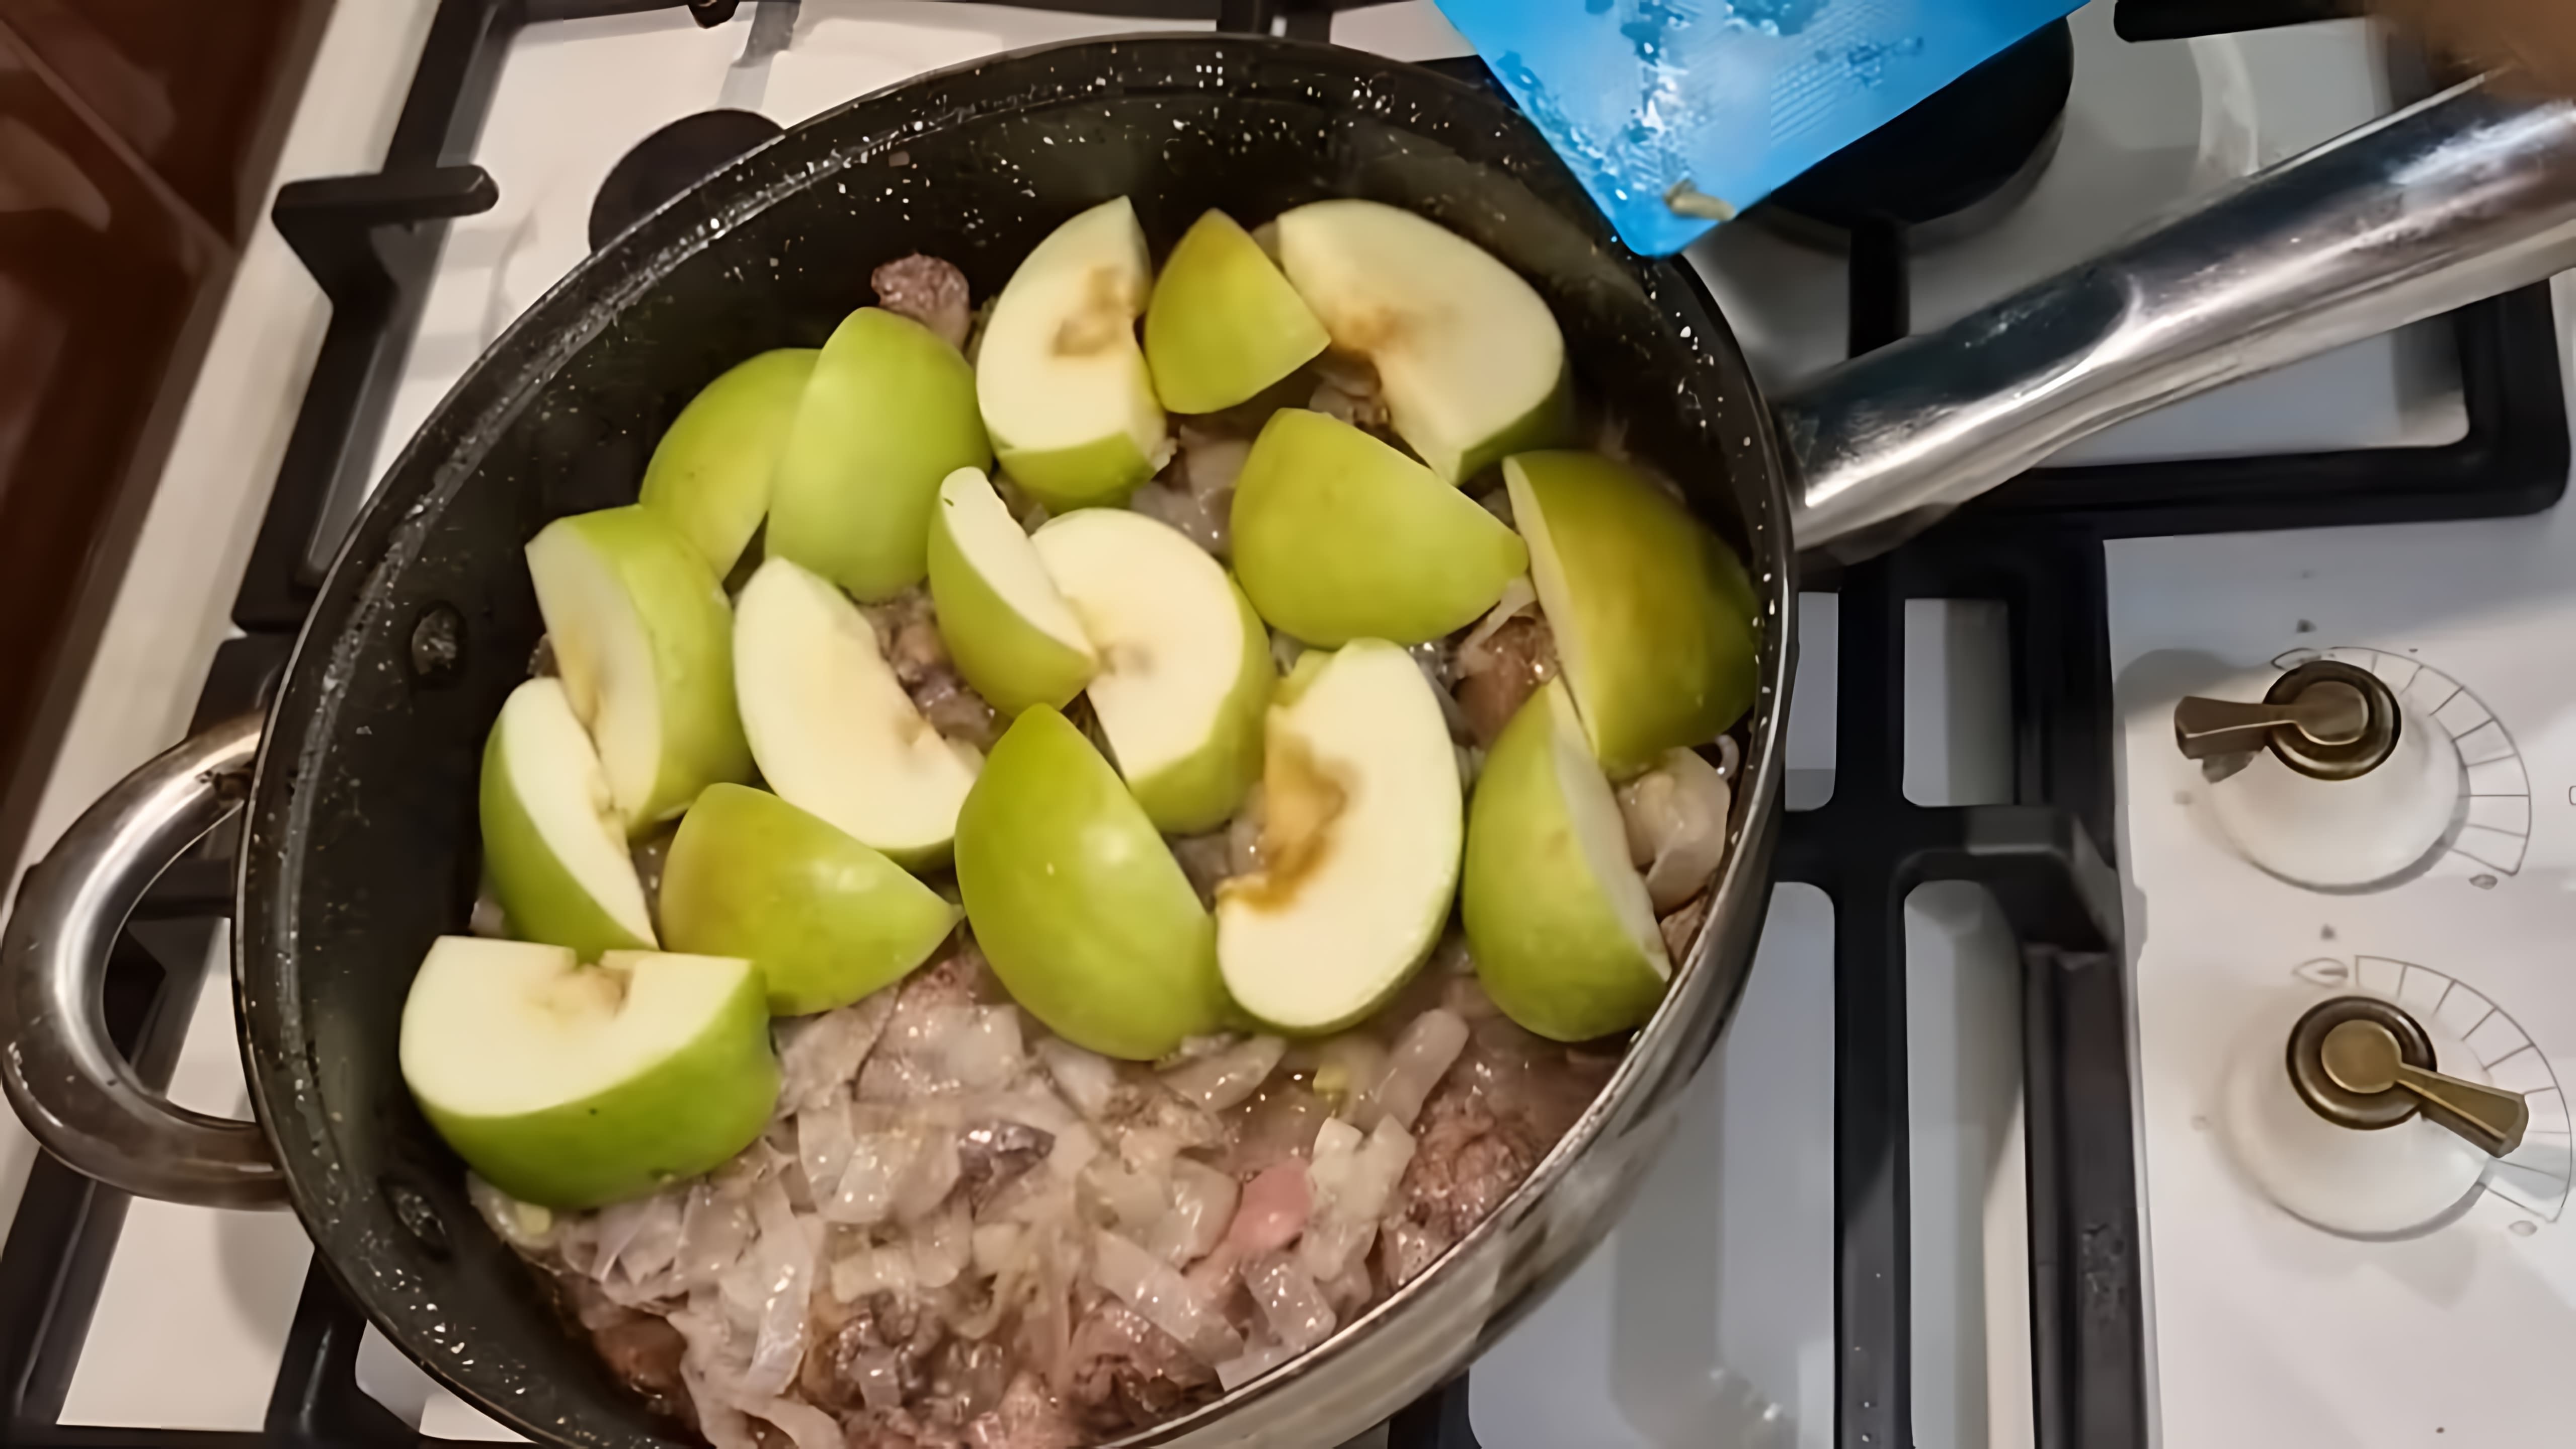 В этом видео демонстрируется рецепт приготовления куриной печени, который был получен от соседки